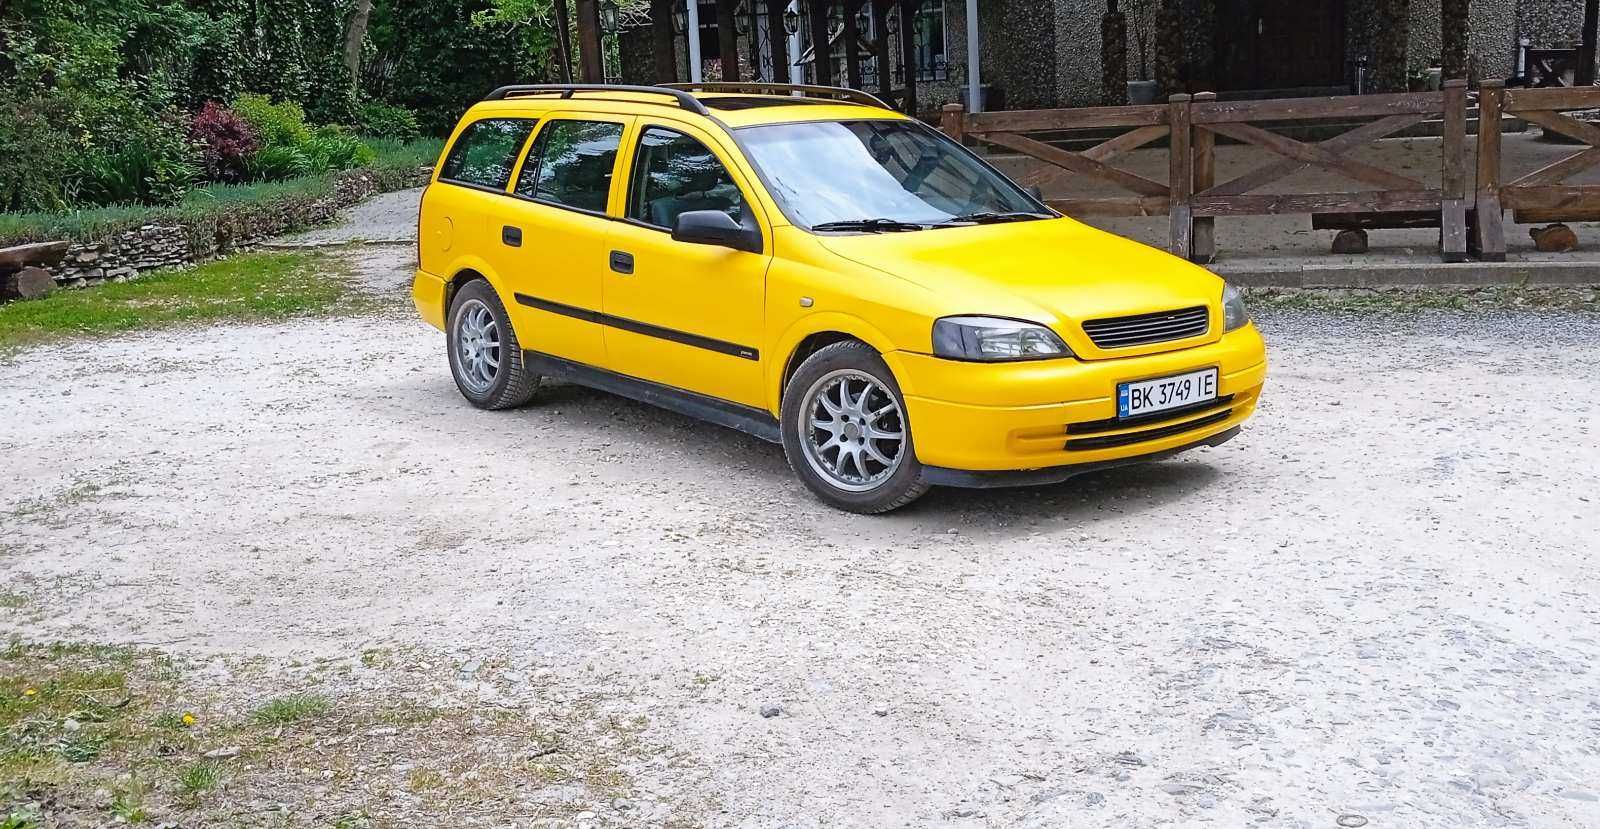 Продам Opel Astra